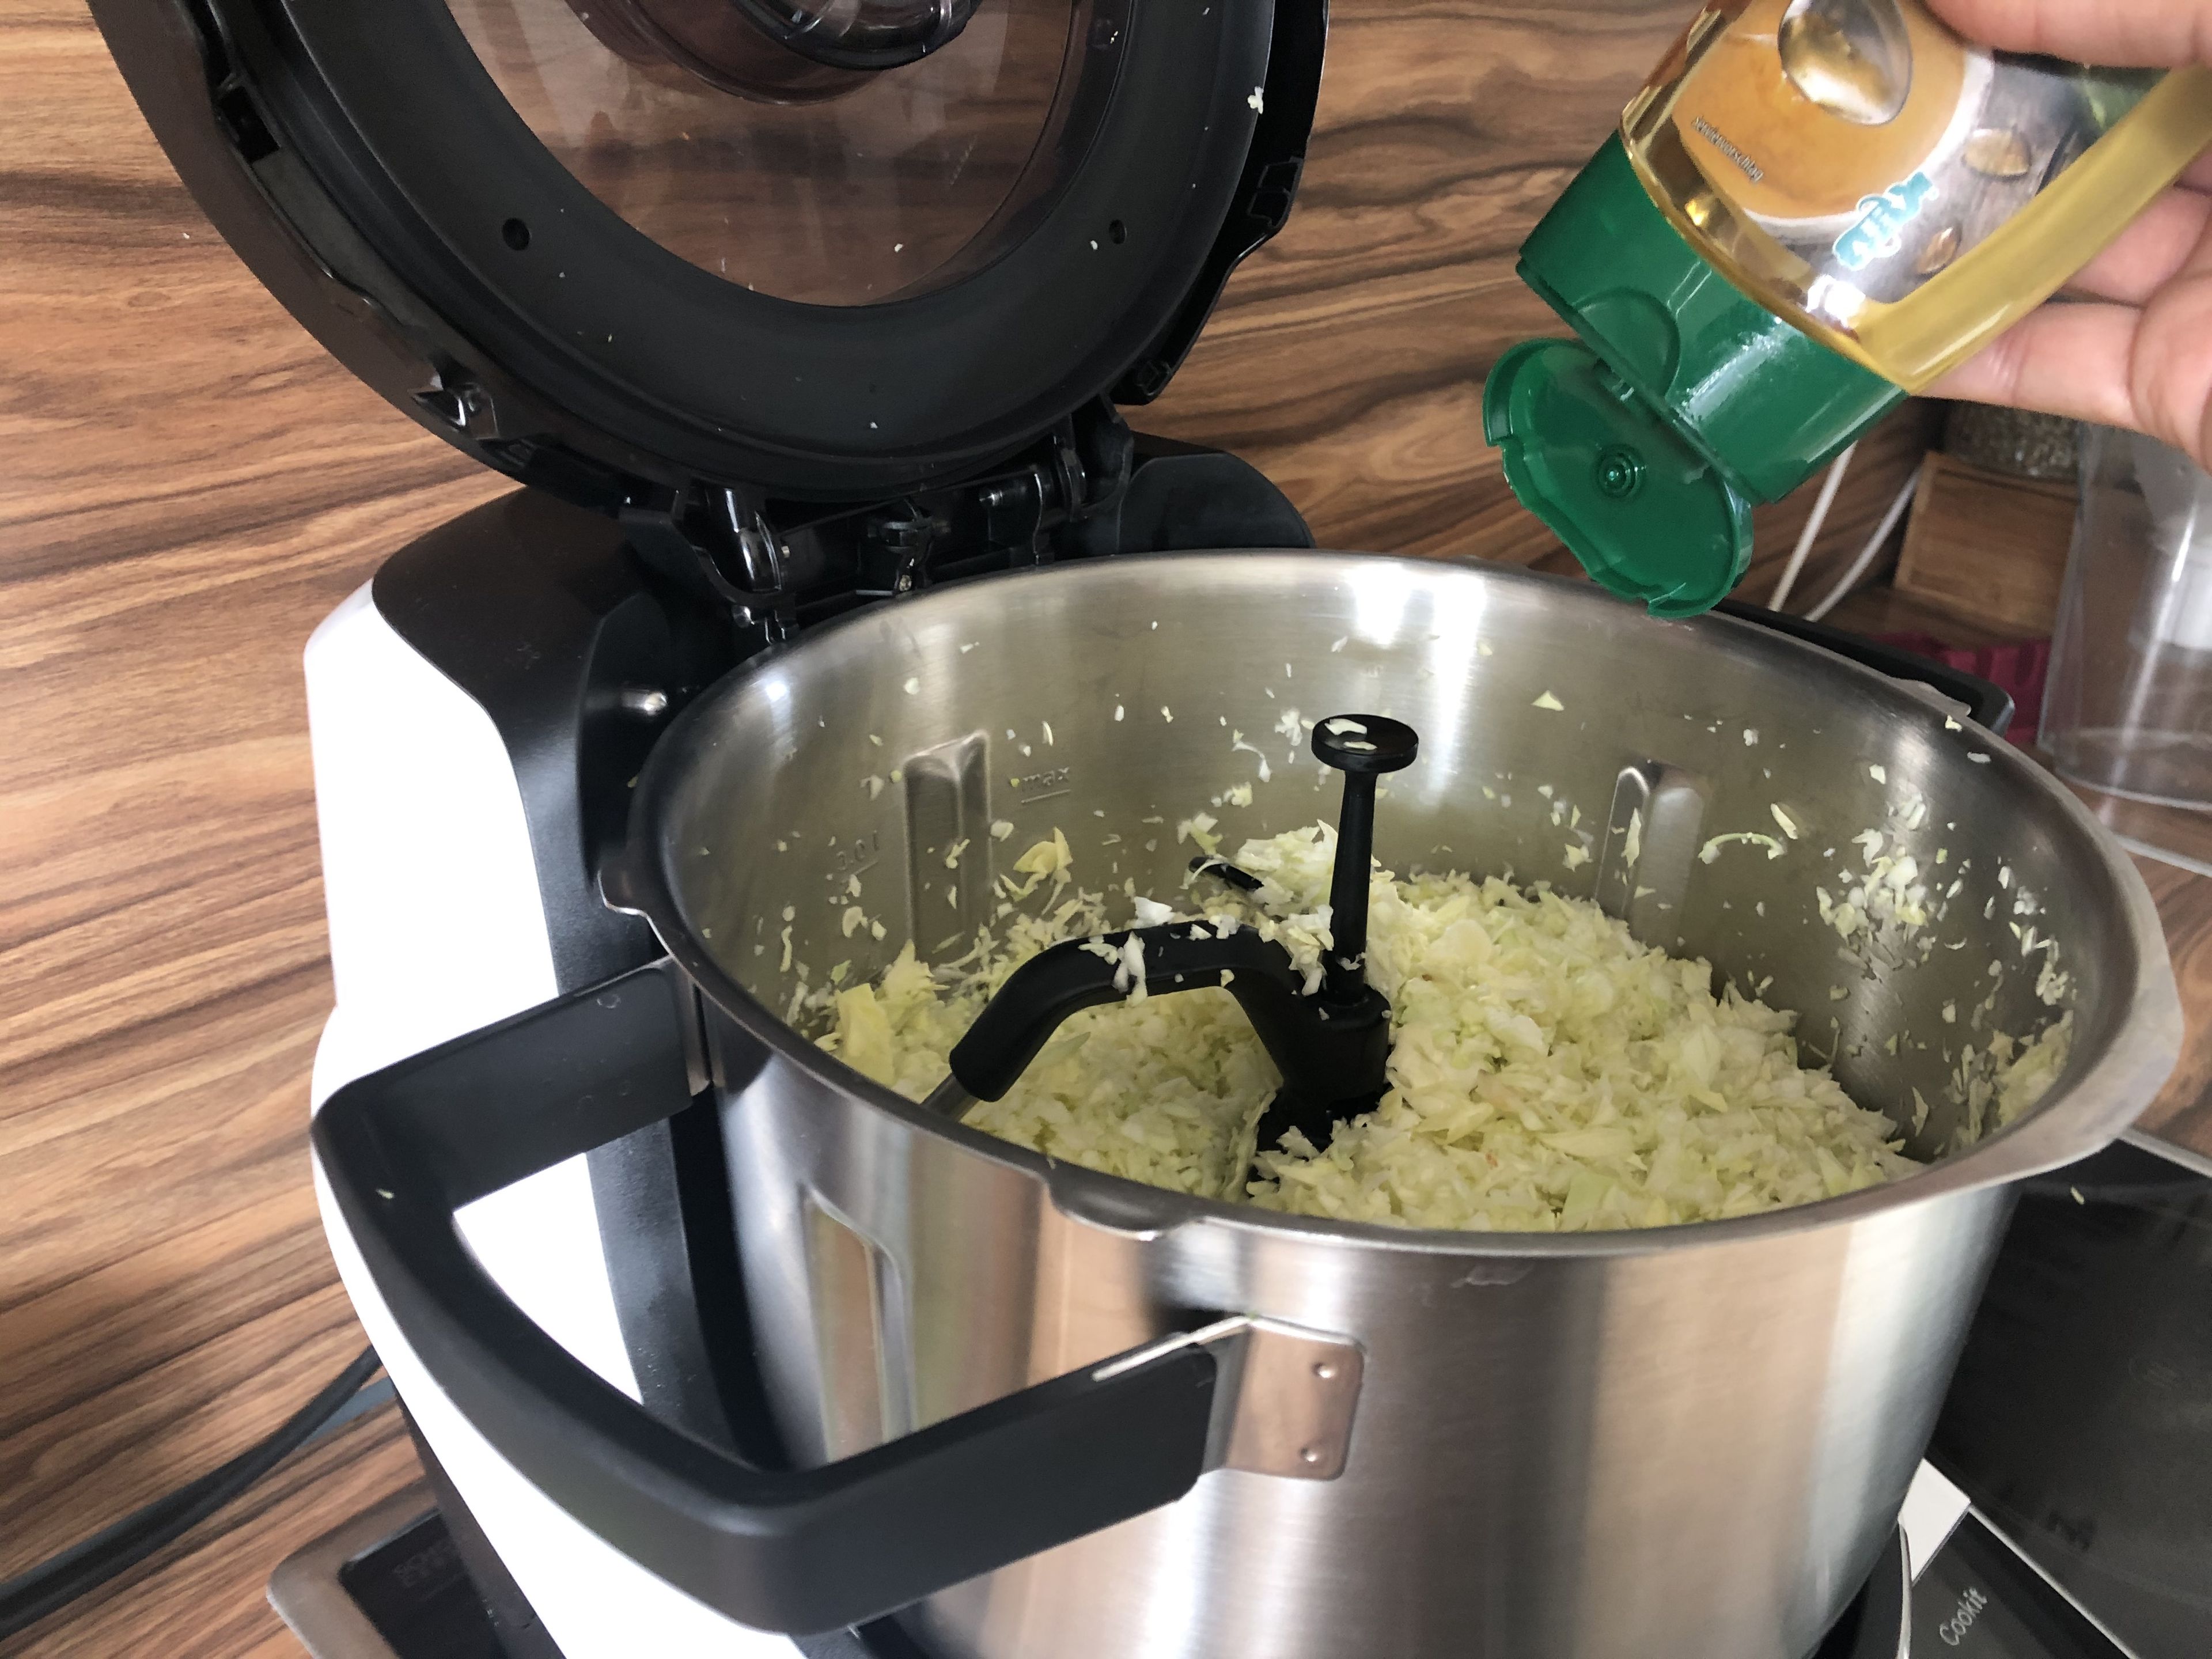 Agavendicksaft, Salz, Pfeffer, Olivenöl, Schwarzkümmel und den Saft einer Limette in den Cookit zugeben. Deckel schließen, Messbecher einsetzen und rühren (3D-Rührer | Stufe 6 | 2 Minuten).